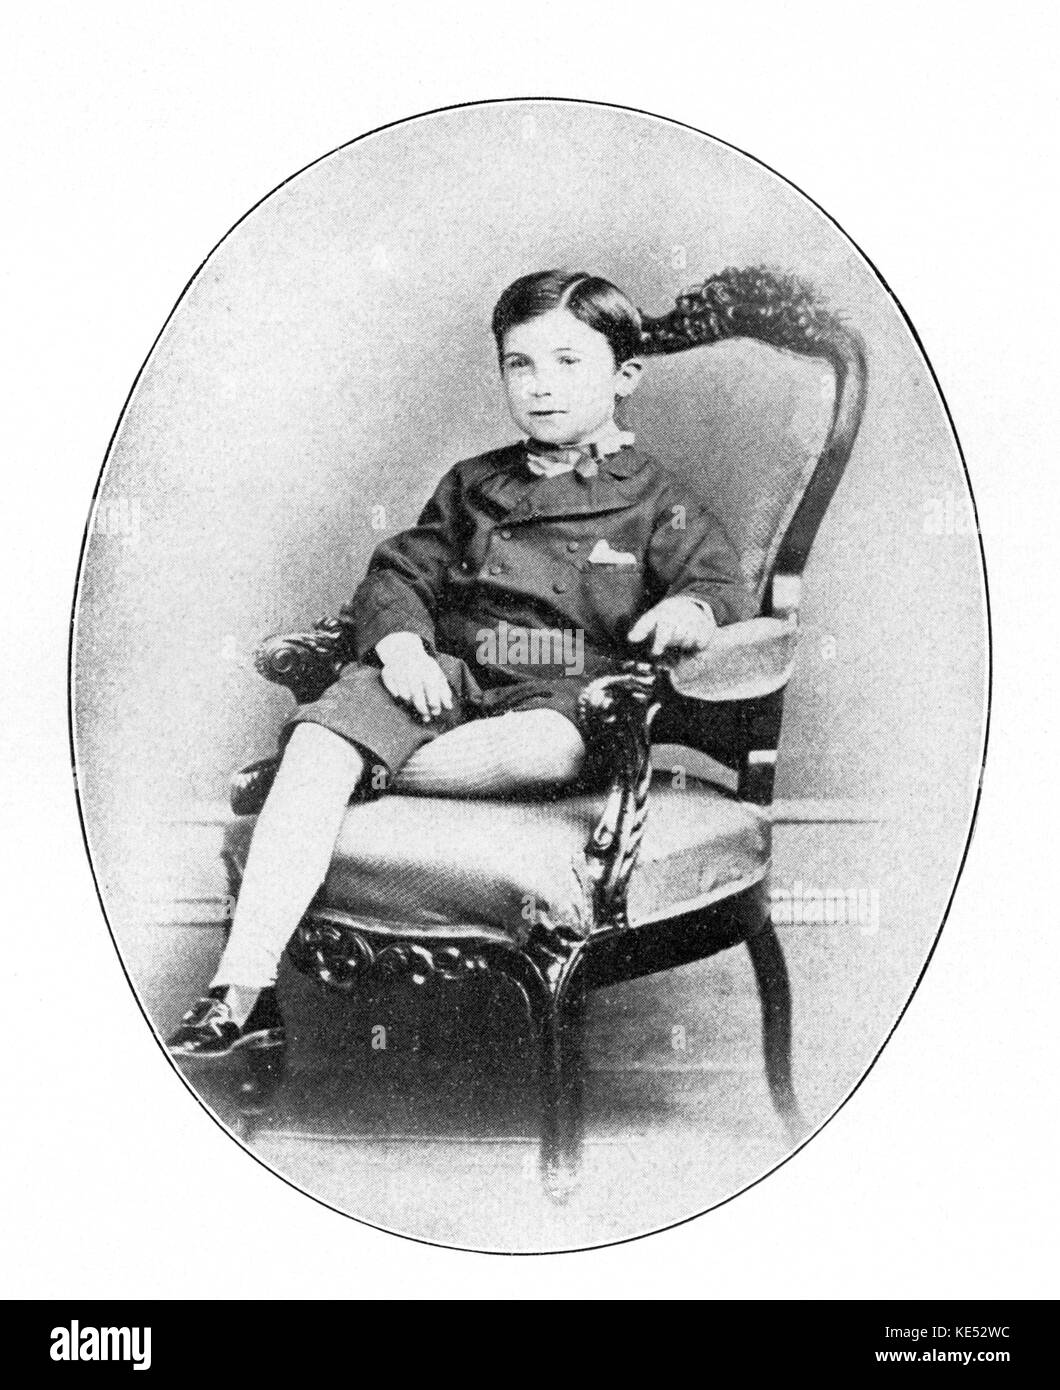 Eugen Francis Charles d' Albert comme jeune garçon pianiste et compositeur allemand de naissance écossais . 10 avril 1864 - 3 mars 1932 Banque D'Images